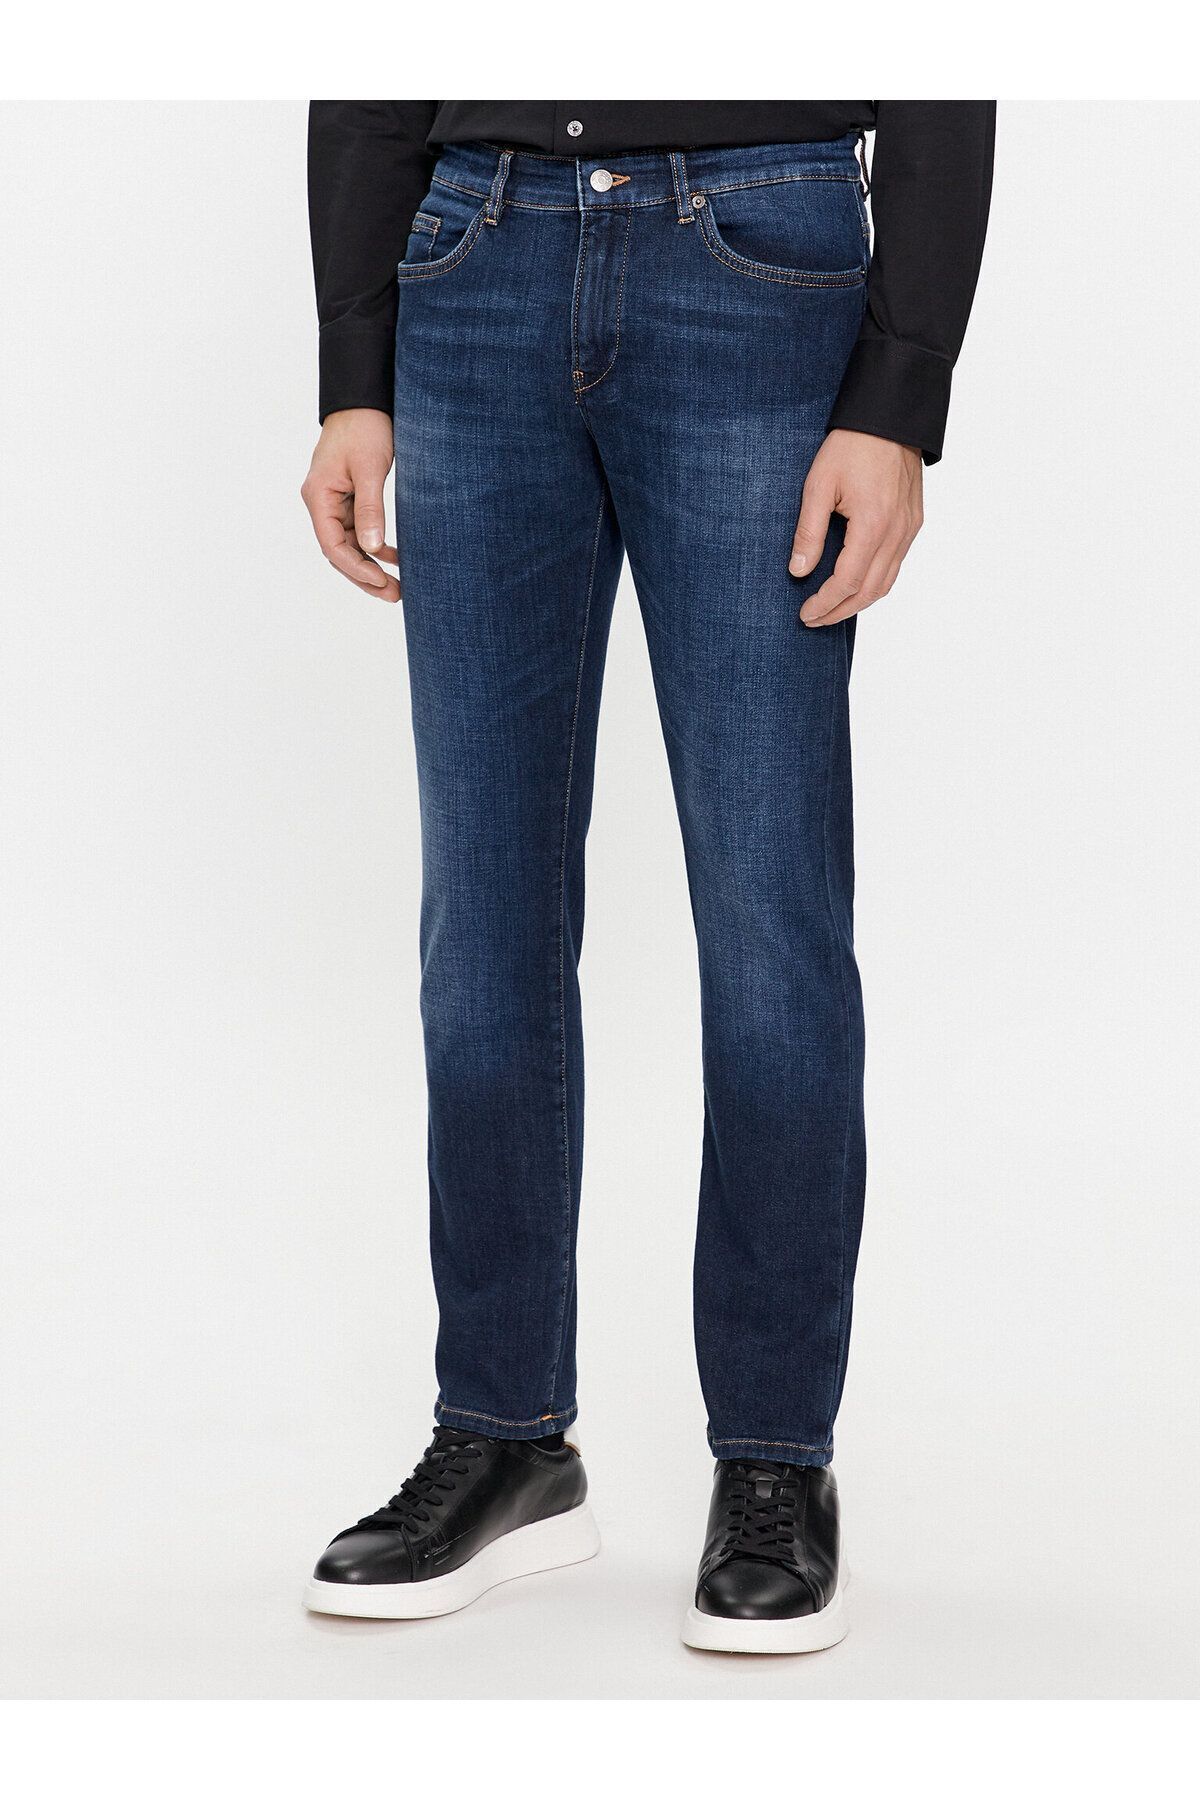 BOSS Erkek Denim Normal Belli Düz Model Günlük Kullanım Lacivert Jeans 50508404-417